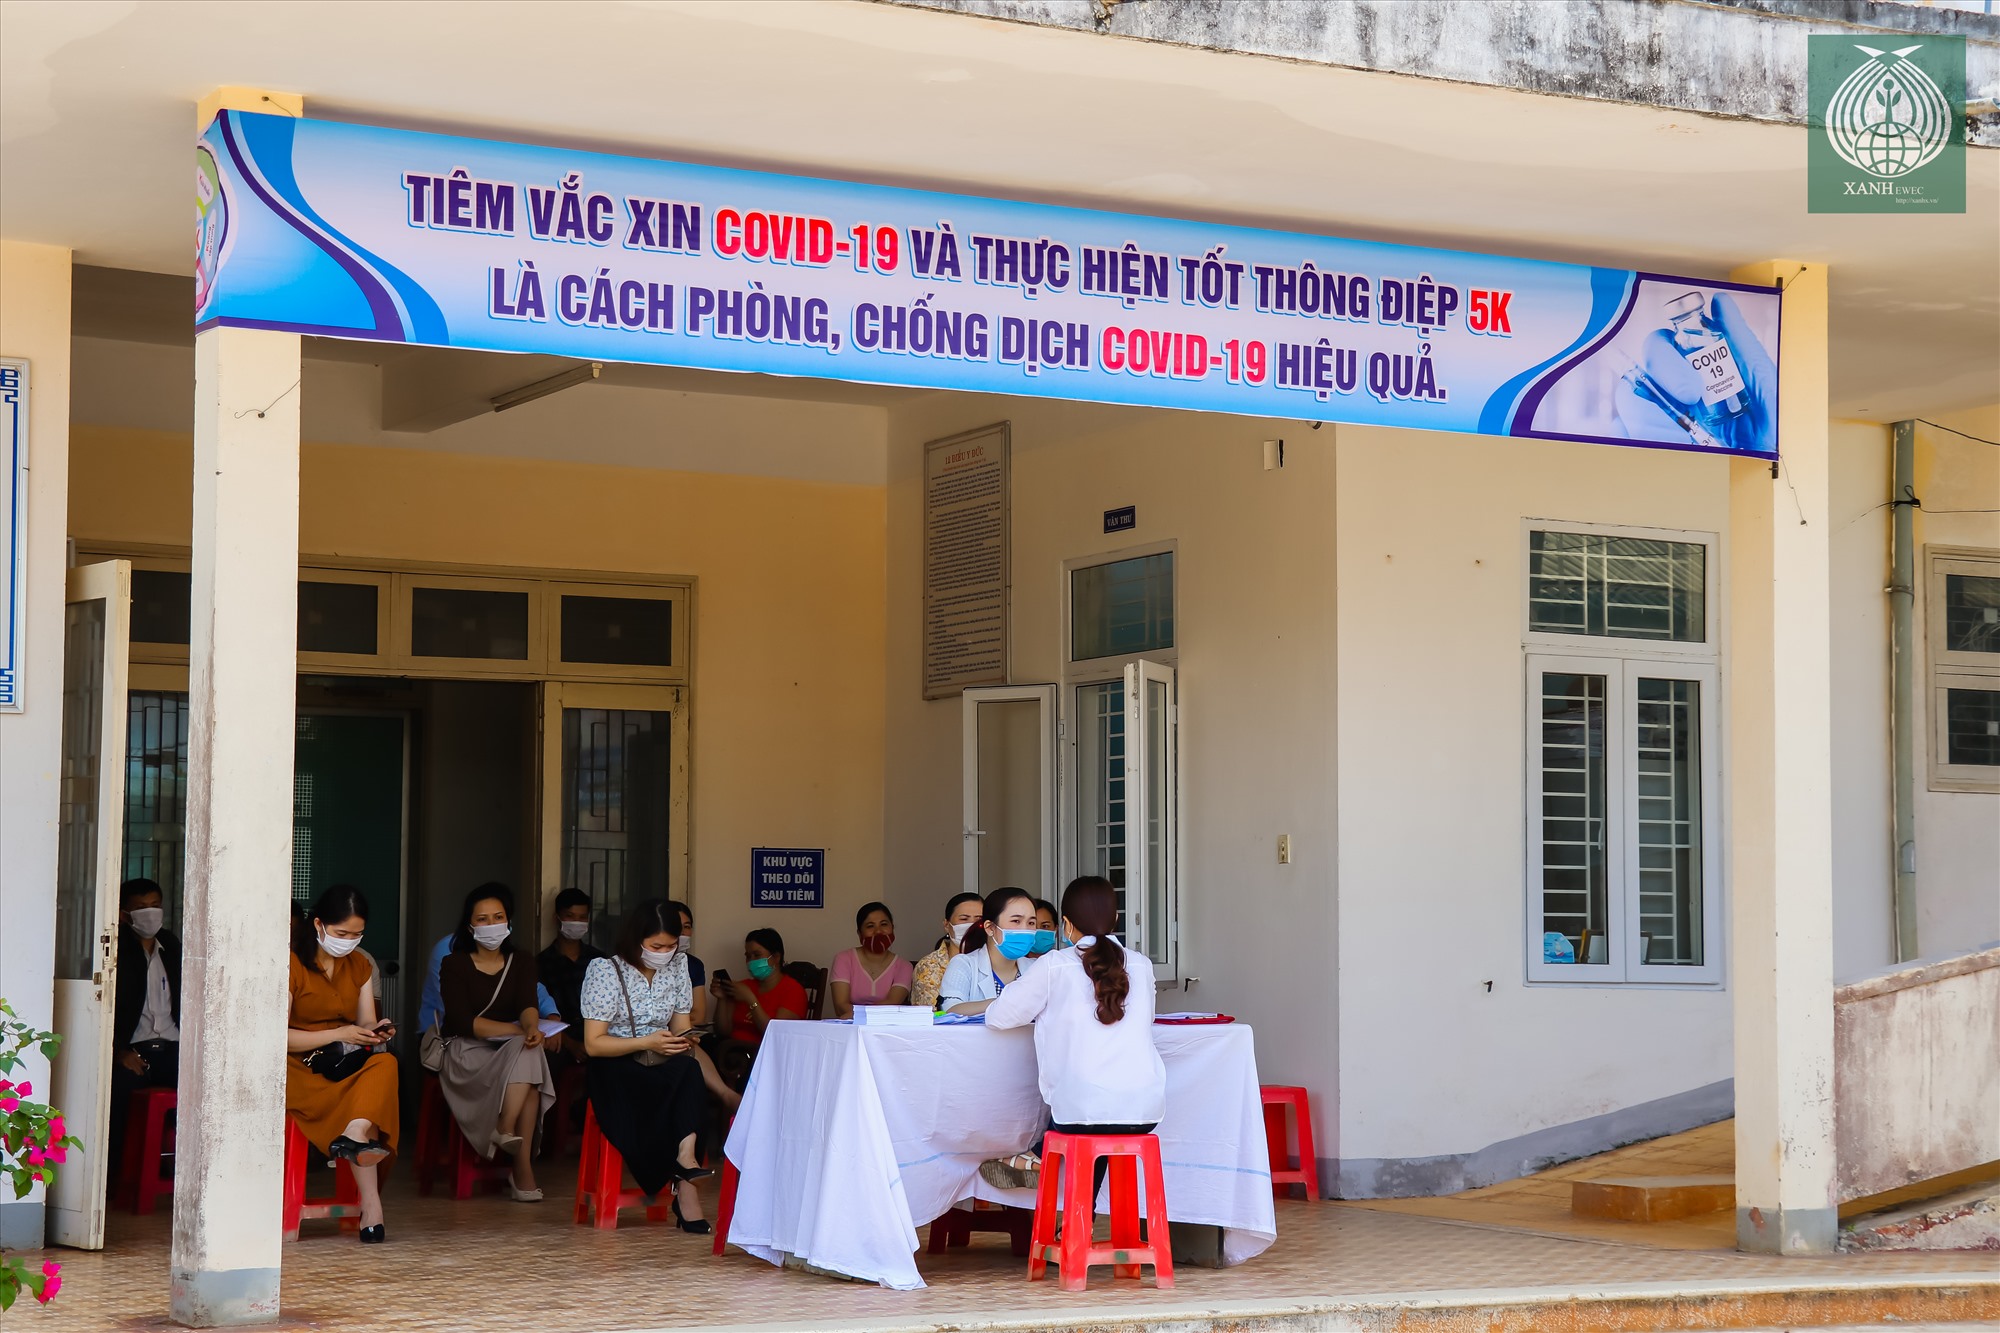 Trung tâm Y tế huyện Hướng Hóa (Quảng Trị) nơi triển khai thực hiện tiêm vắc xin phòng dịch COVID – 19